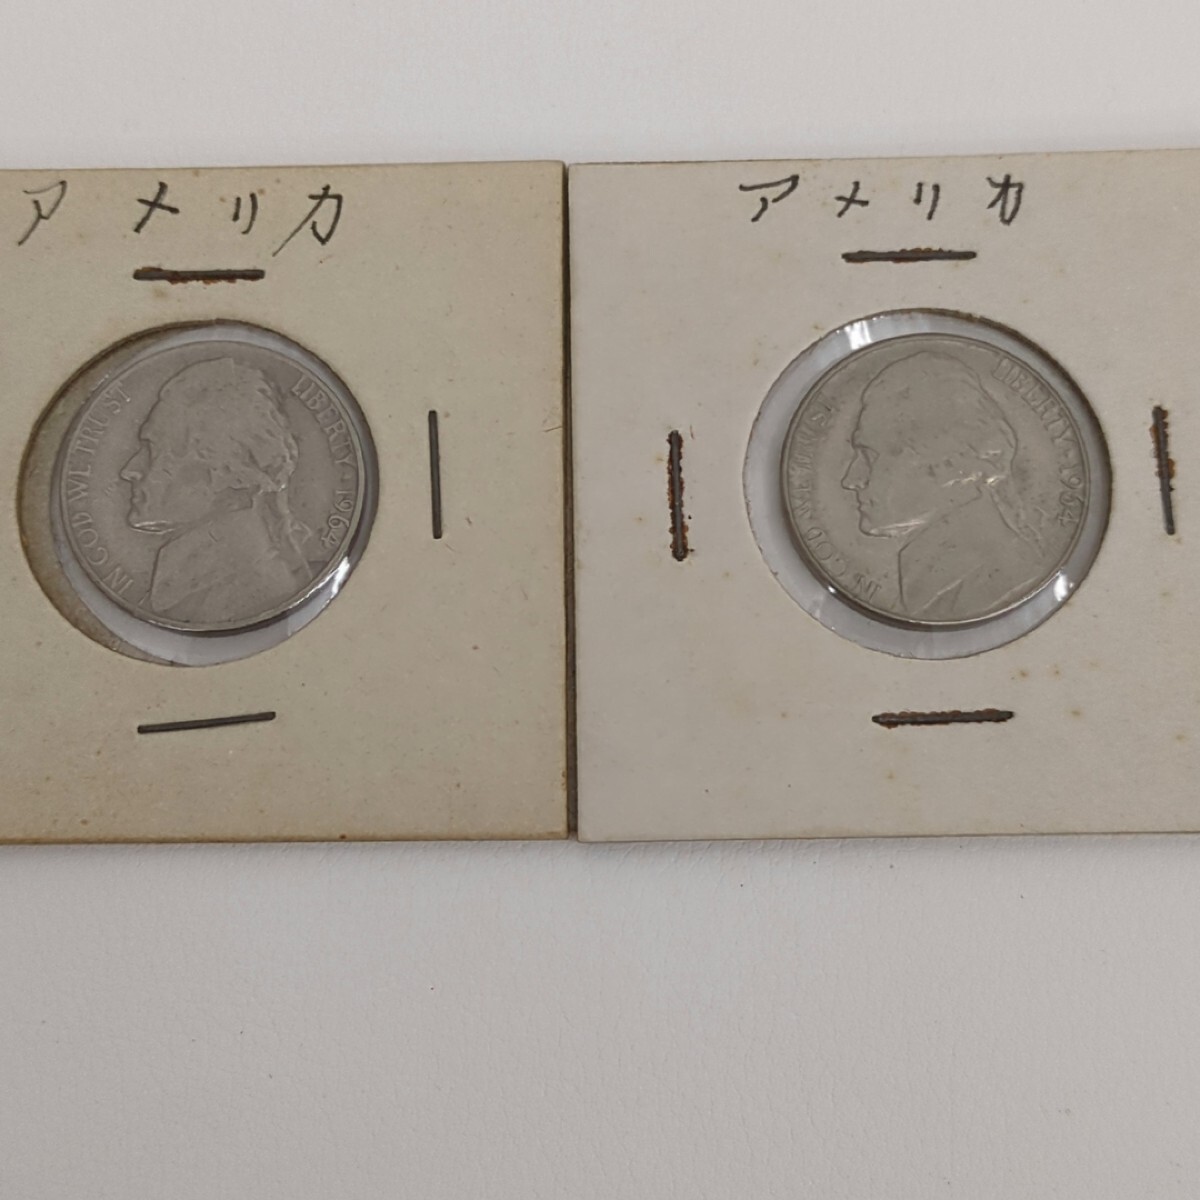 アメリカ 銀貨 1964年 ケネディ HALF DOLLAR ハーフダラー 50セント 1961 5セント×2 計3枚セット アンティーク 硬貨 外貨の画像6